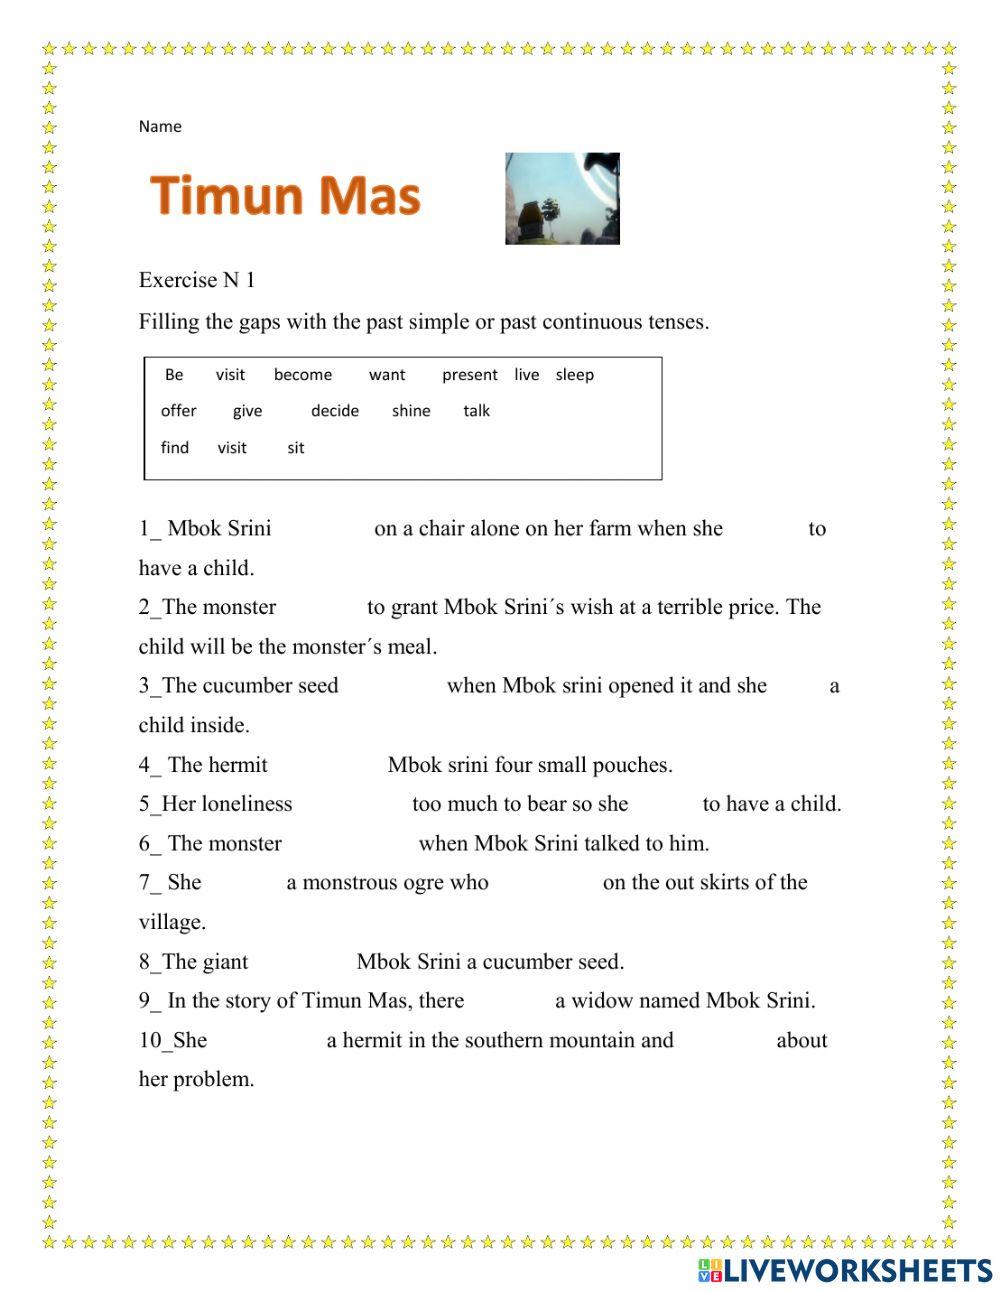 Timun Mas worksheet